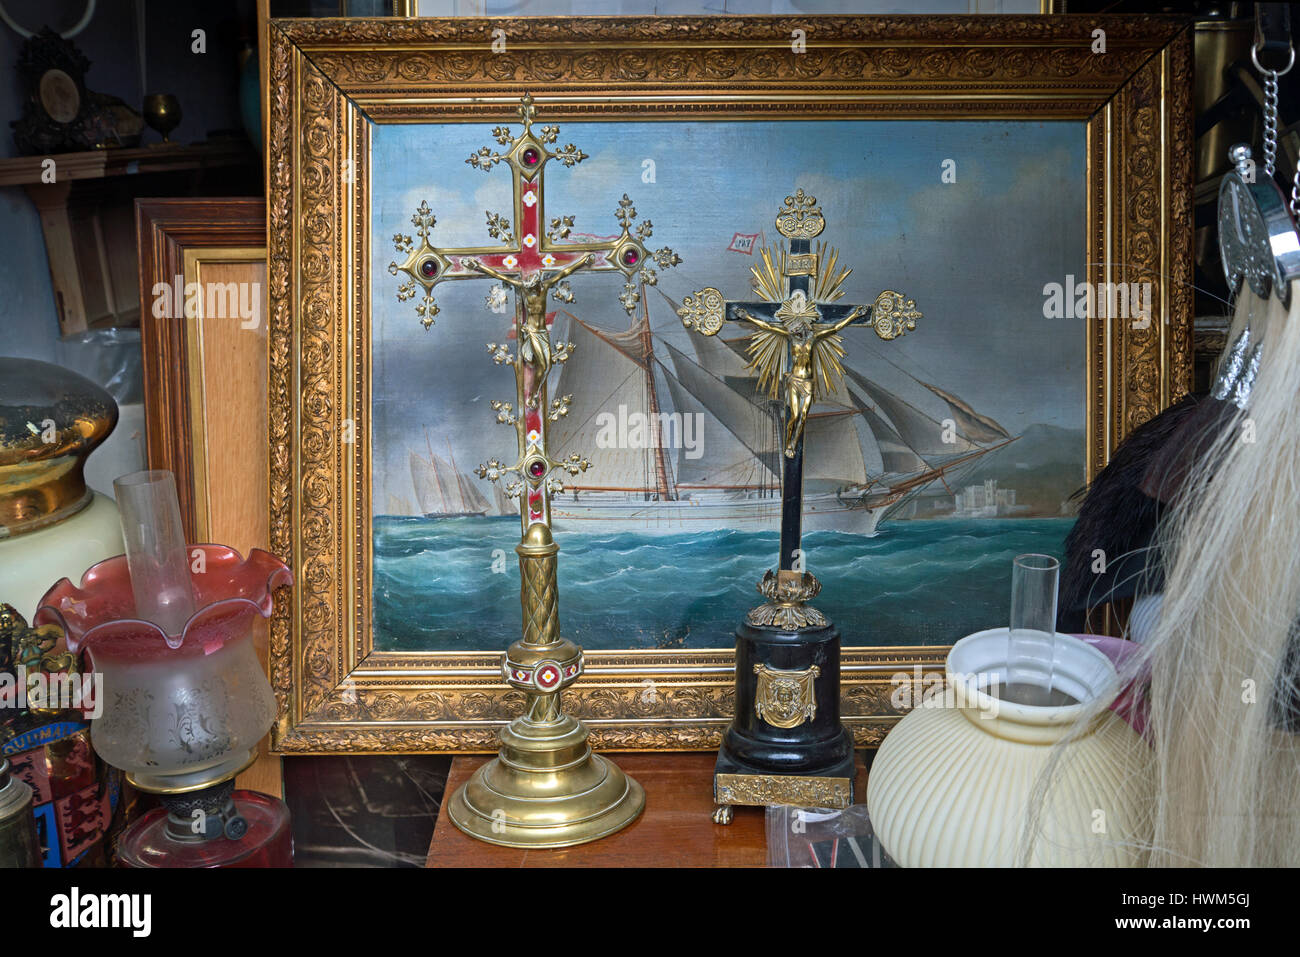 Gemälde von einem Segelschiff und Kruzifixe im Fenster ein Antiquitätengeschäft in Edinburghs Neustadt. Stockfoto